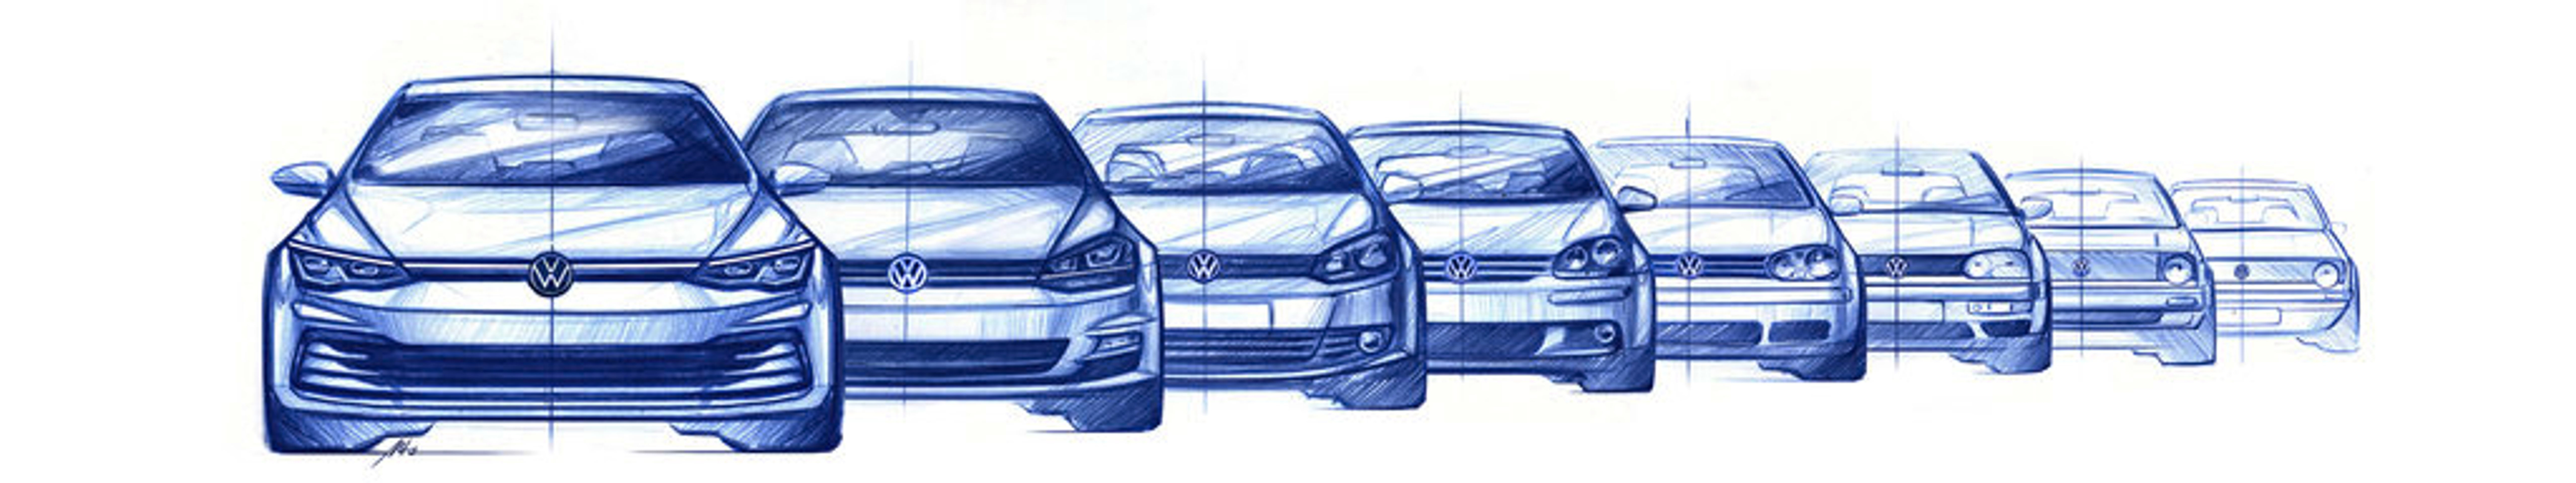 VW Golf - Fotogalerie: Osmá generace VW Golf na skicách (4/6)